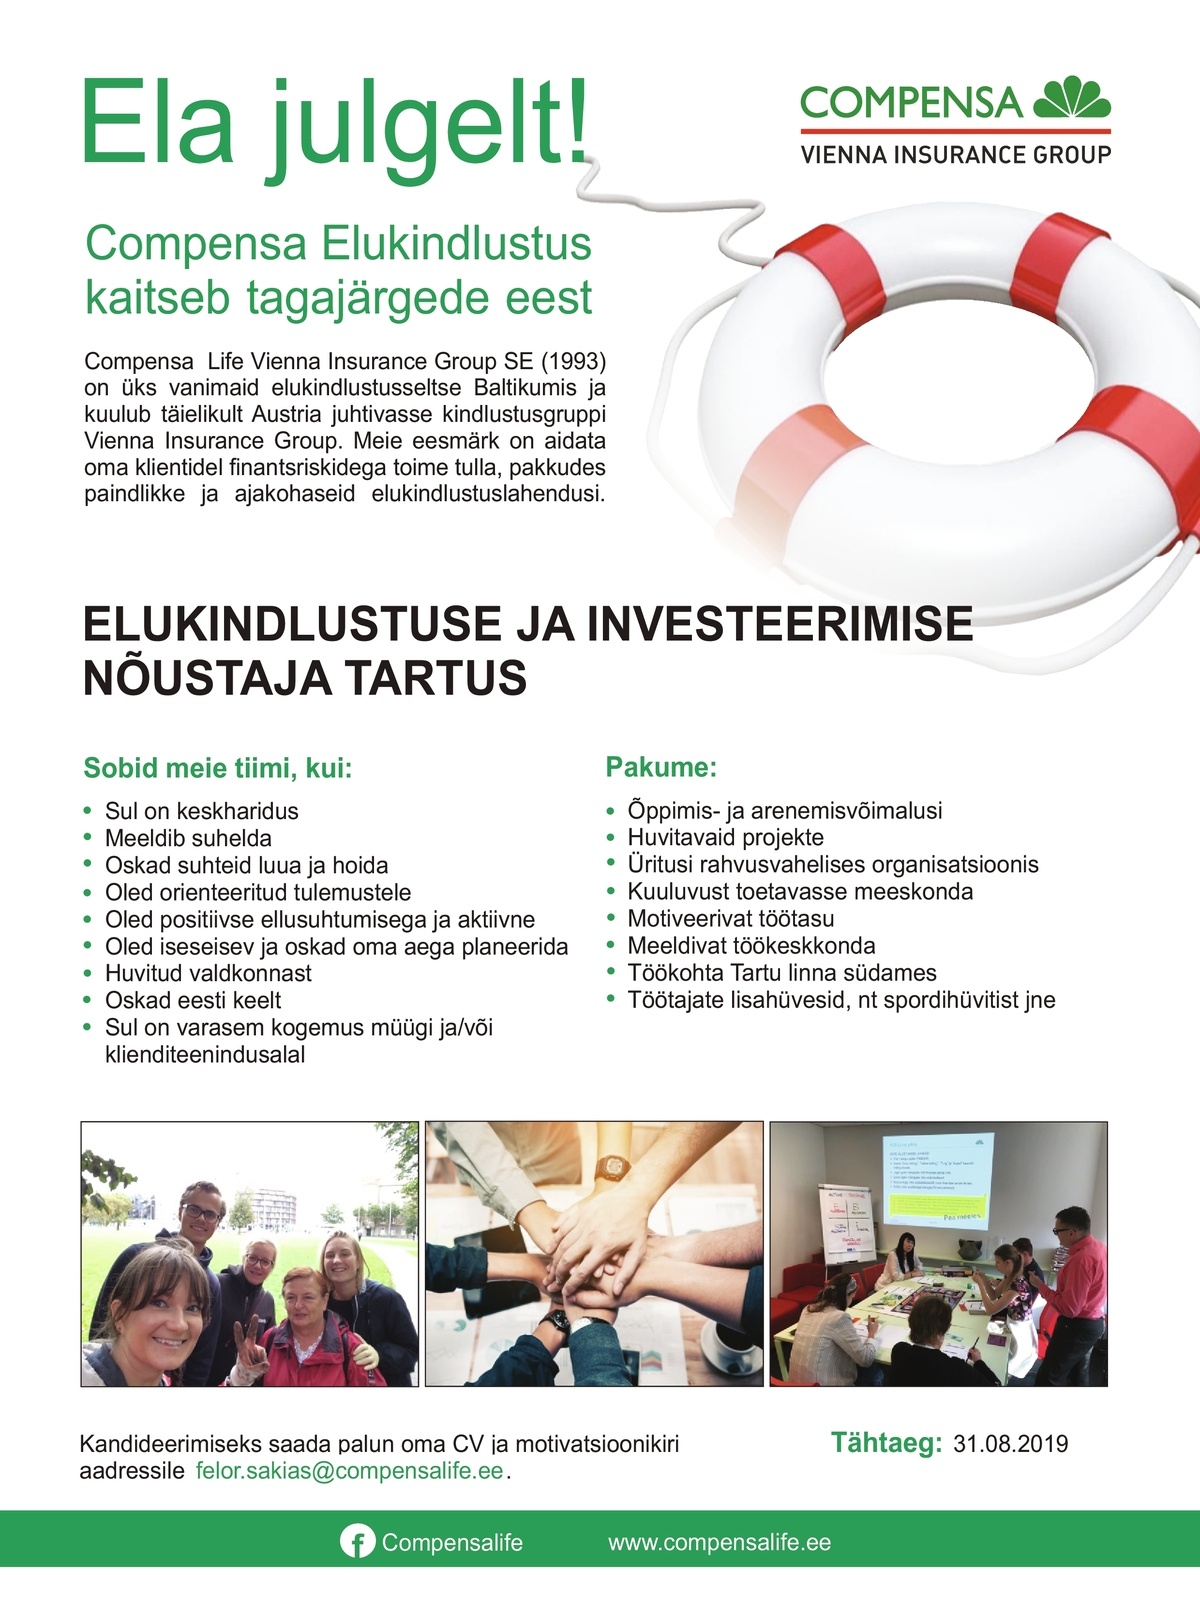 Compensa Life Vienna Insurance Group SE Elukindlustuse ja investeerimise nõustaja Tartus